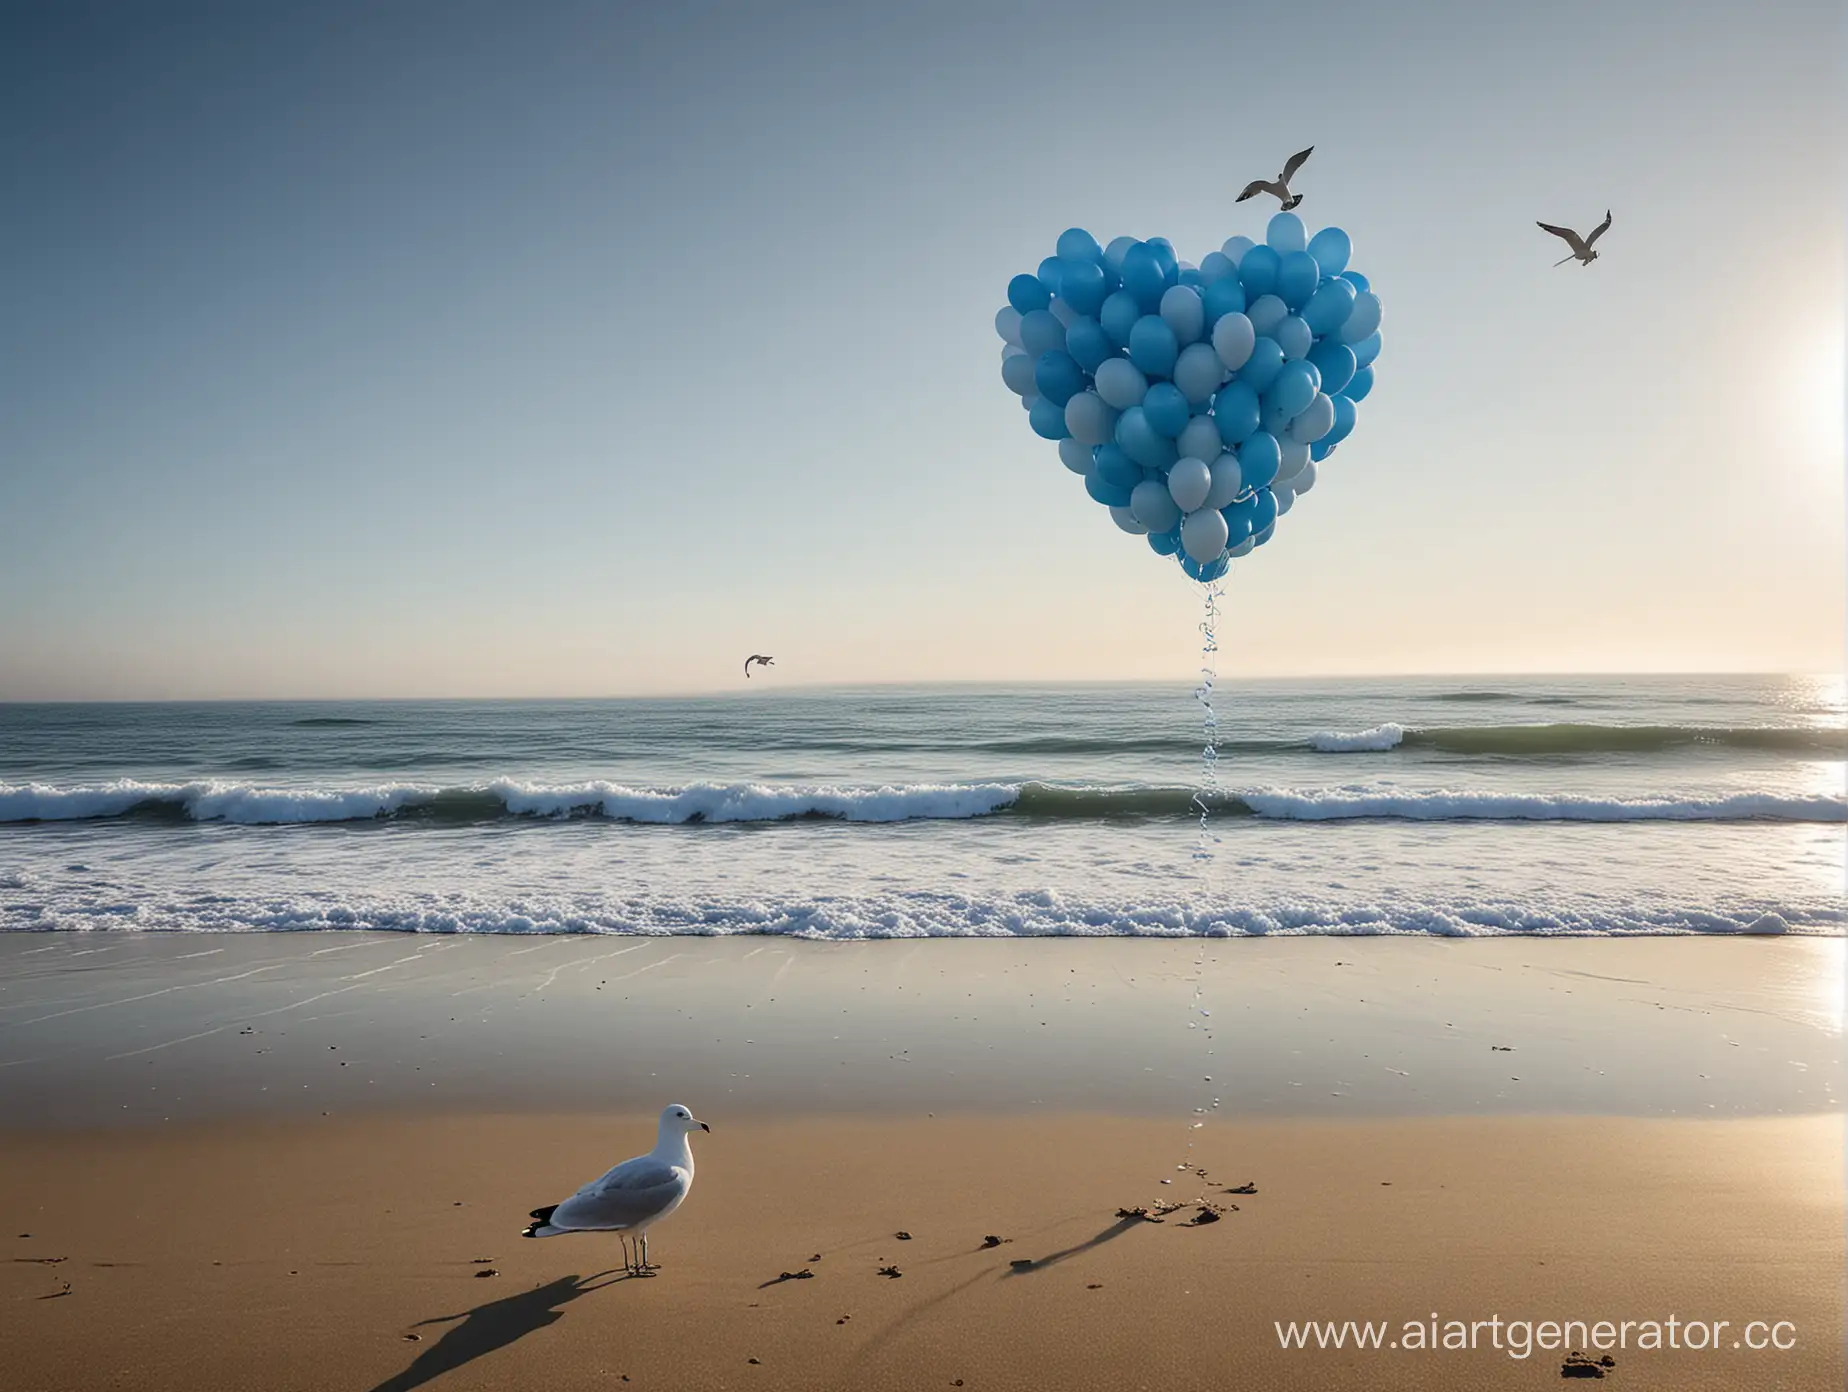 На этом изображении запечатлен безмятежный момент на пляже. горизонт. В этой спокойной обстановке можно увидеть фигуру чайки из воздушных шаров, пролетающую над интересным объектом в форме сердца, которое полностью состоит из воздушных шаров голубого и белого цвета.